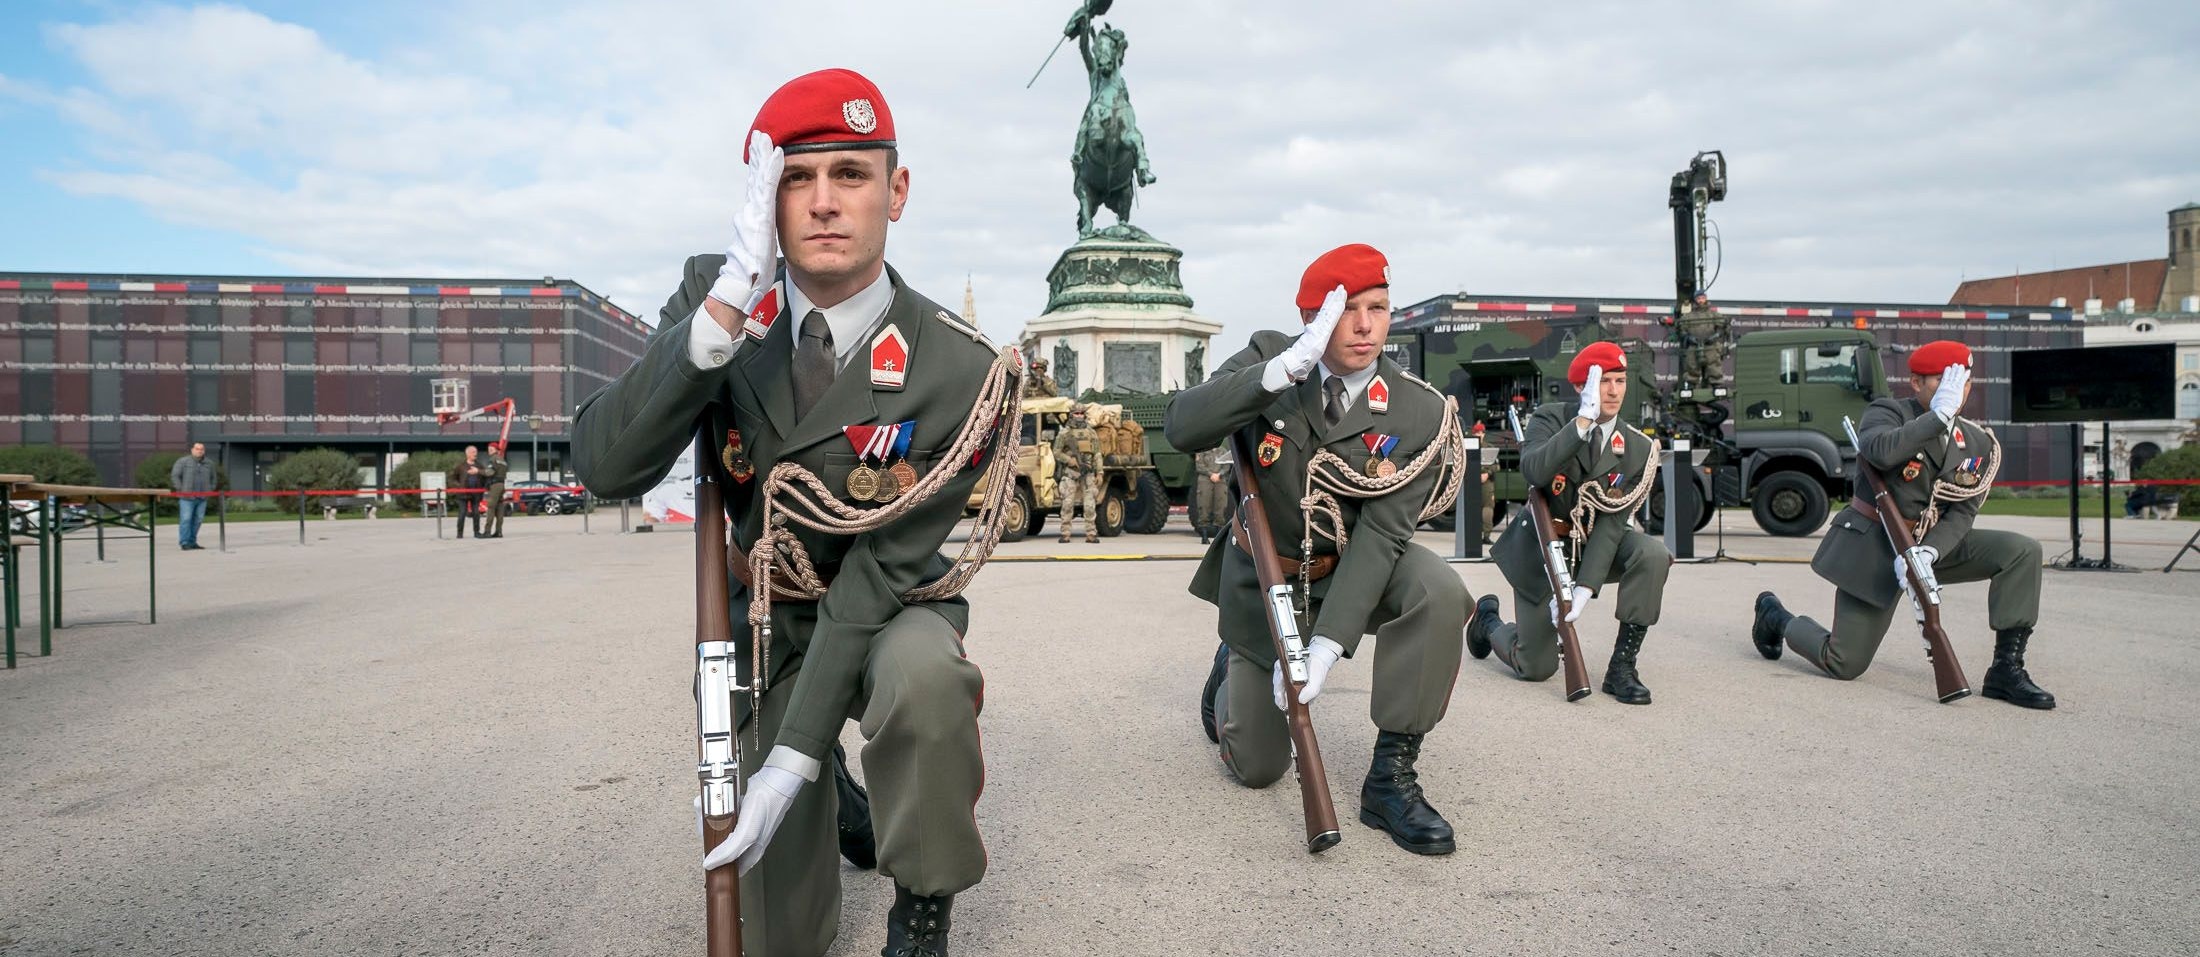 Welchen Wert hat die Neutralität noch? Vorführung der Garde auf der Bundesheer-Leistungsschau am Wiener Heldenplatz 2018